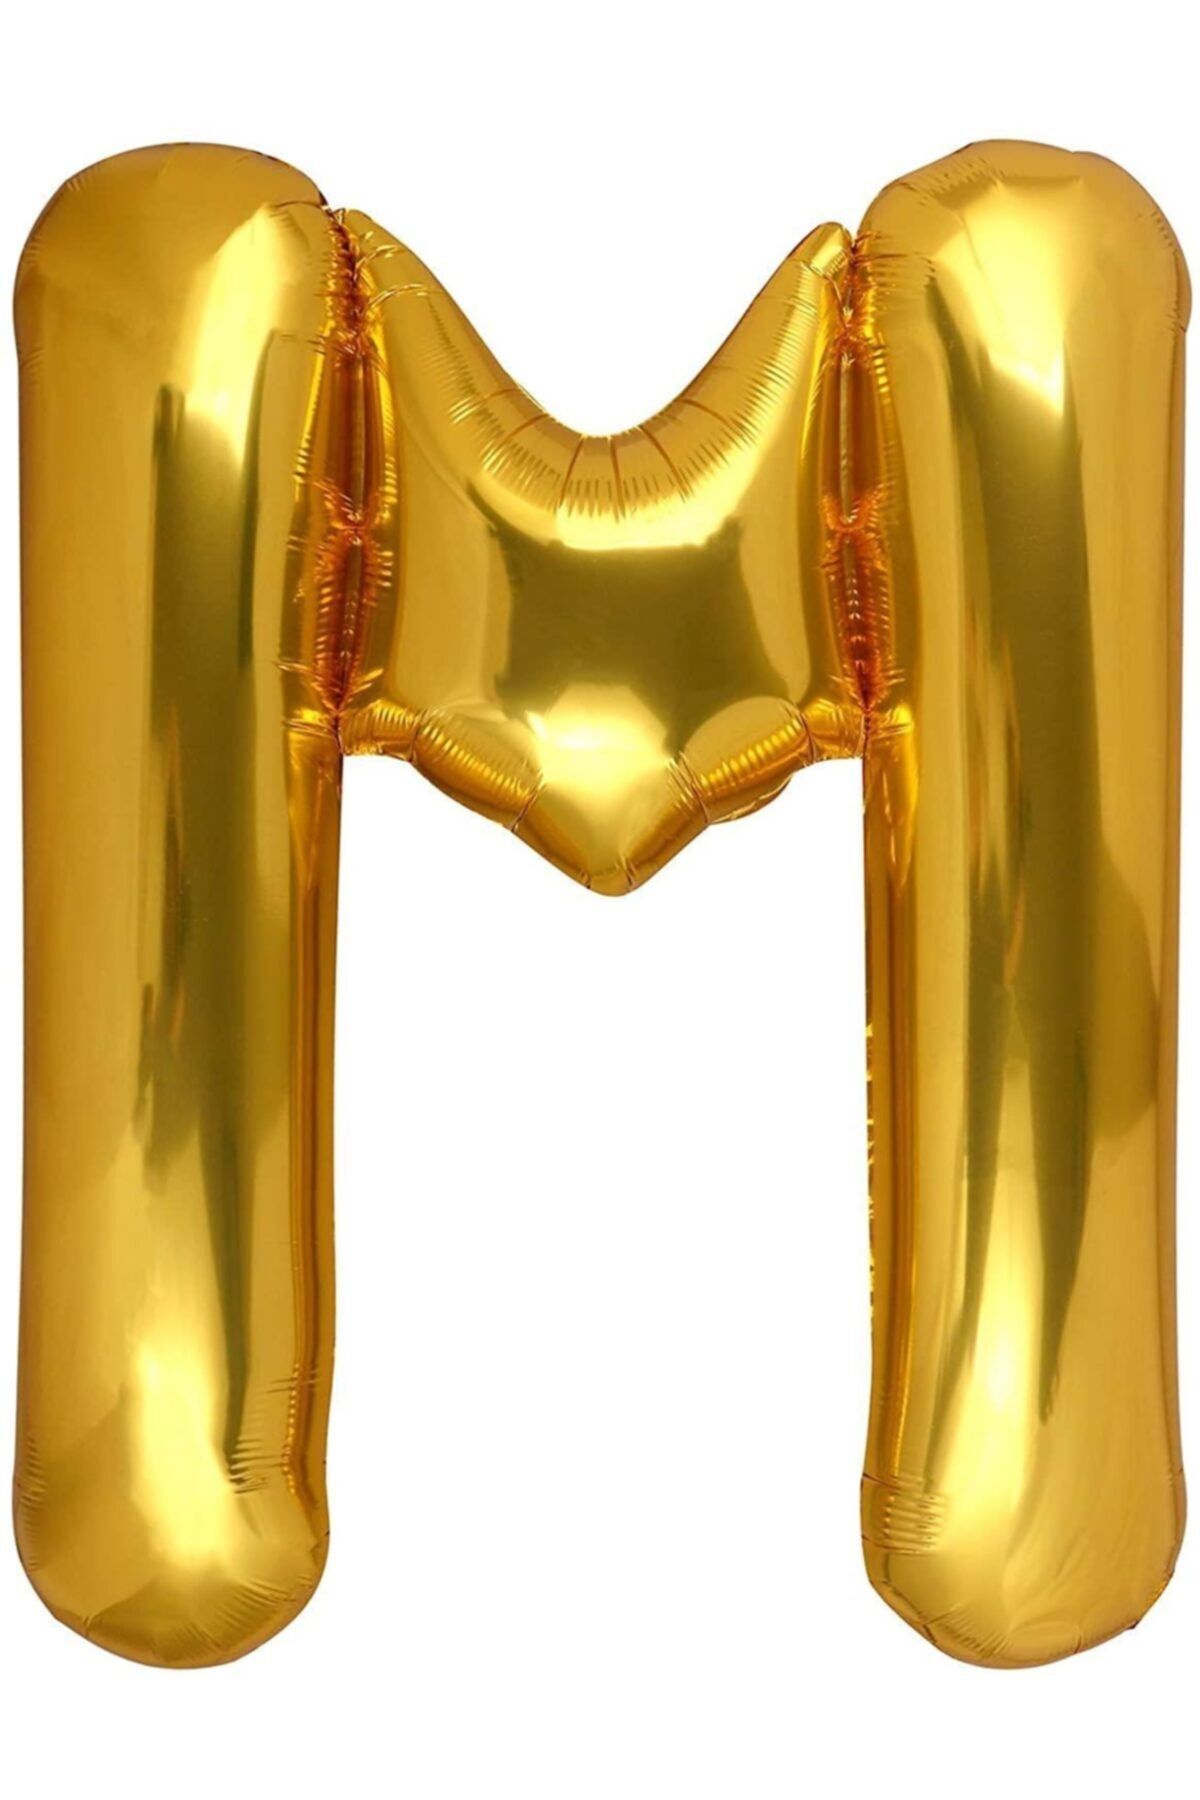 araget 1 Metre Harf Folyo Balon Altın Renk M Harf 100cm 40inç